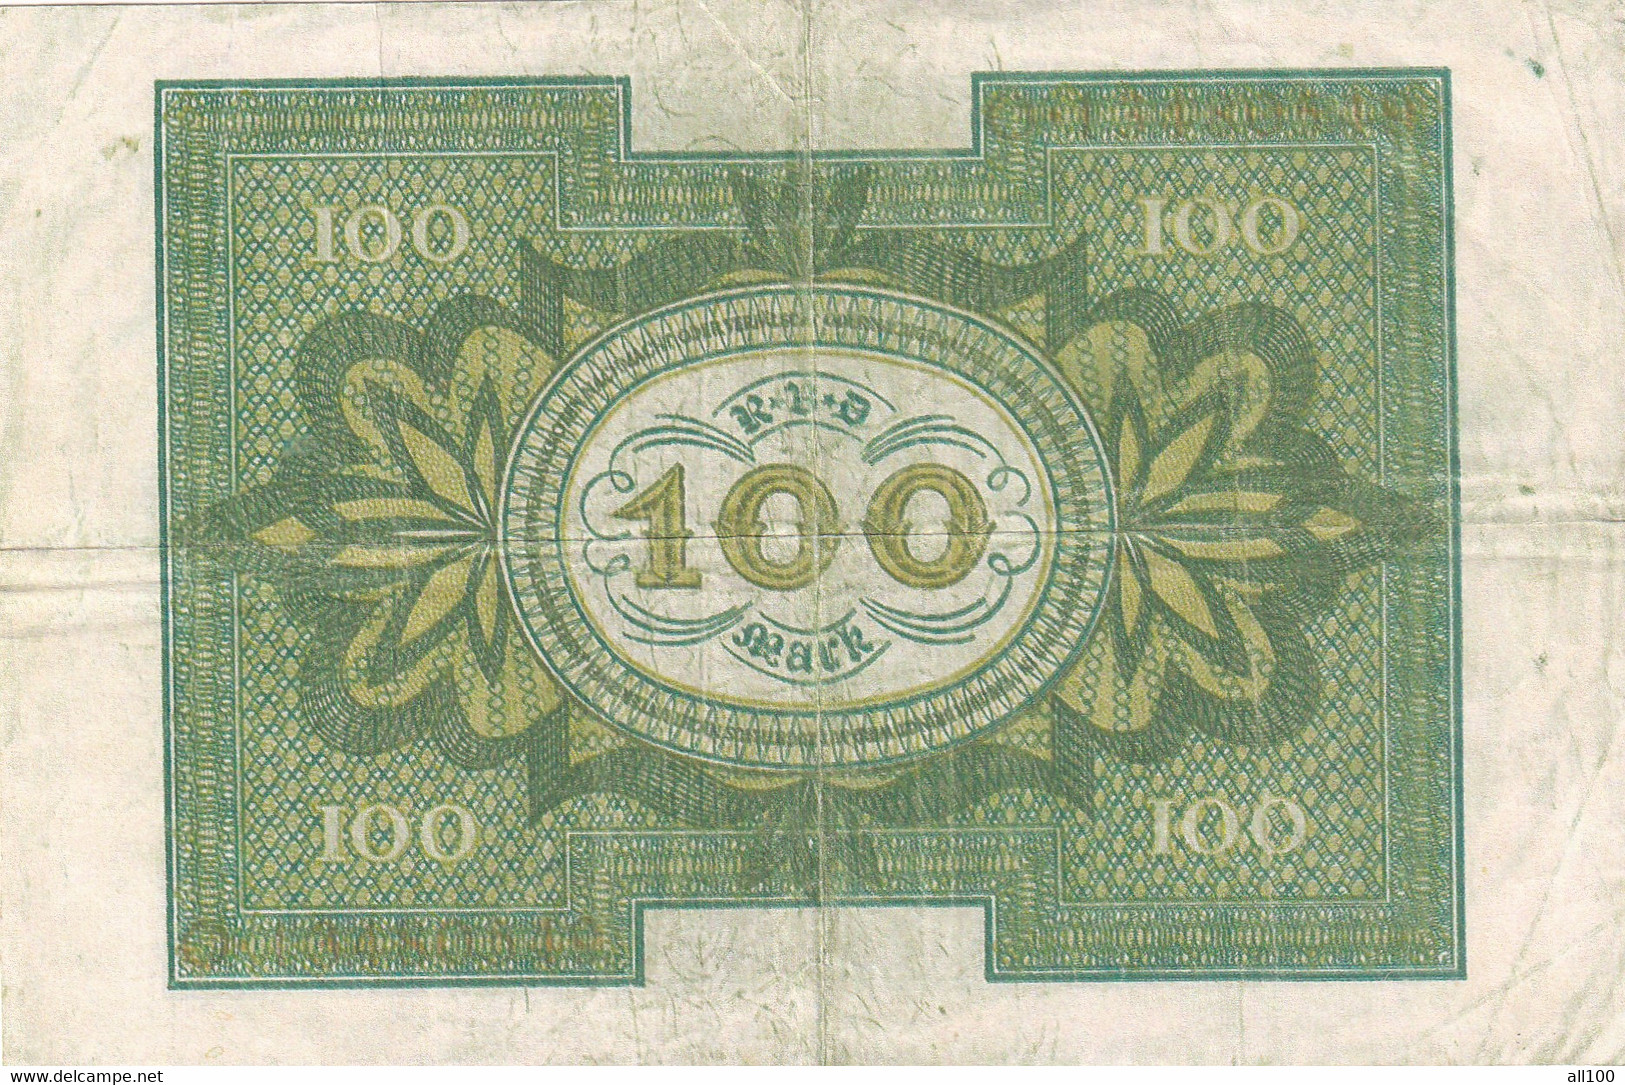 100 MARK HUNDERT MARK GERMANY 1920 REICHSBANKNOTE RBD - 100 Mark